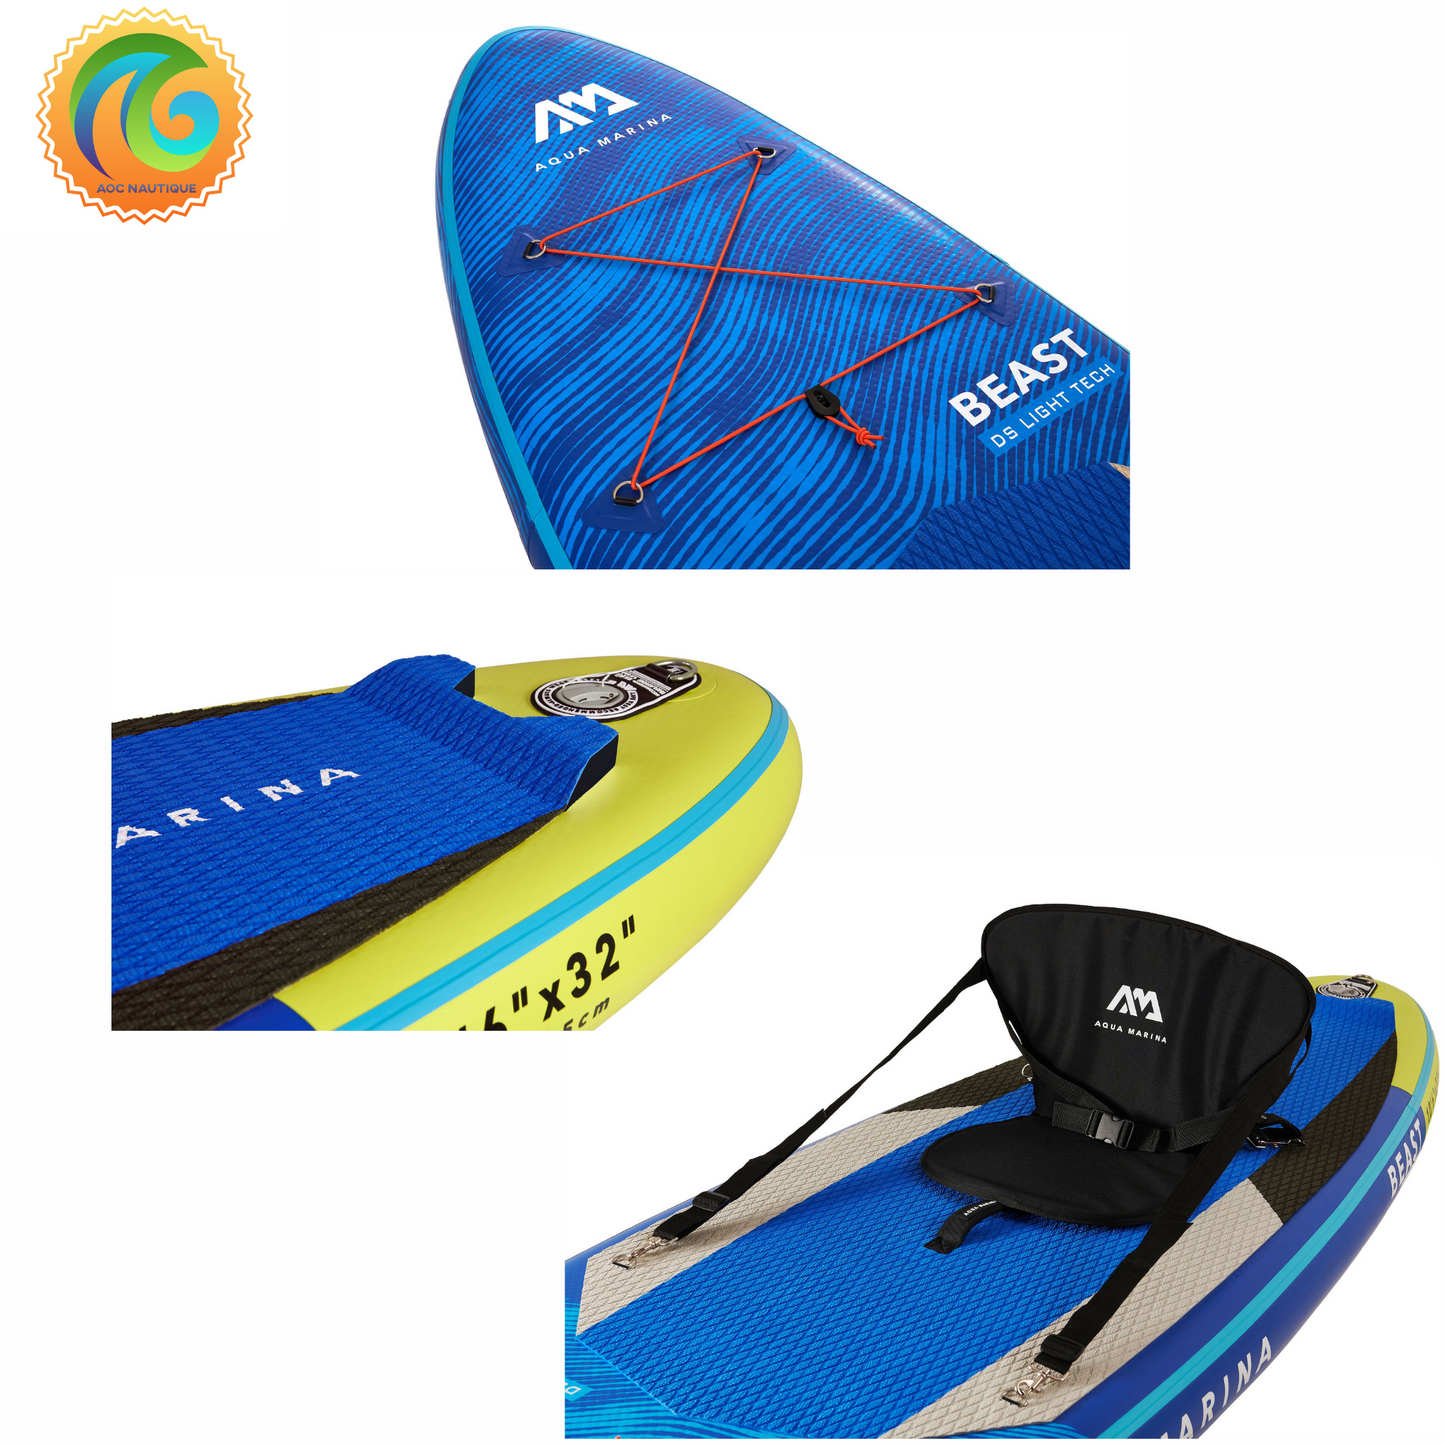 Achat et vente de Paddle board Aquamarina Beast # BT-21BEPincluant les accessoires.  Photo du sièege Kayak et des accessoires conçu pour cette planche à pagaie